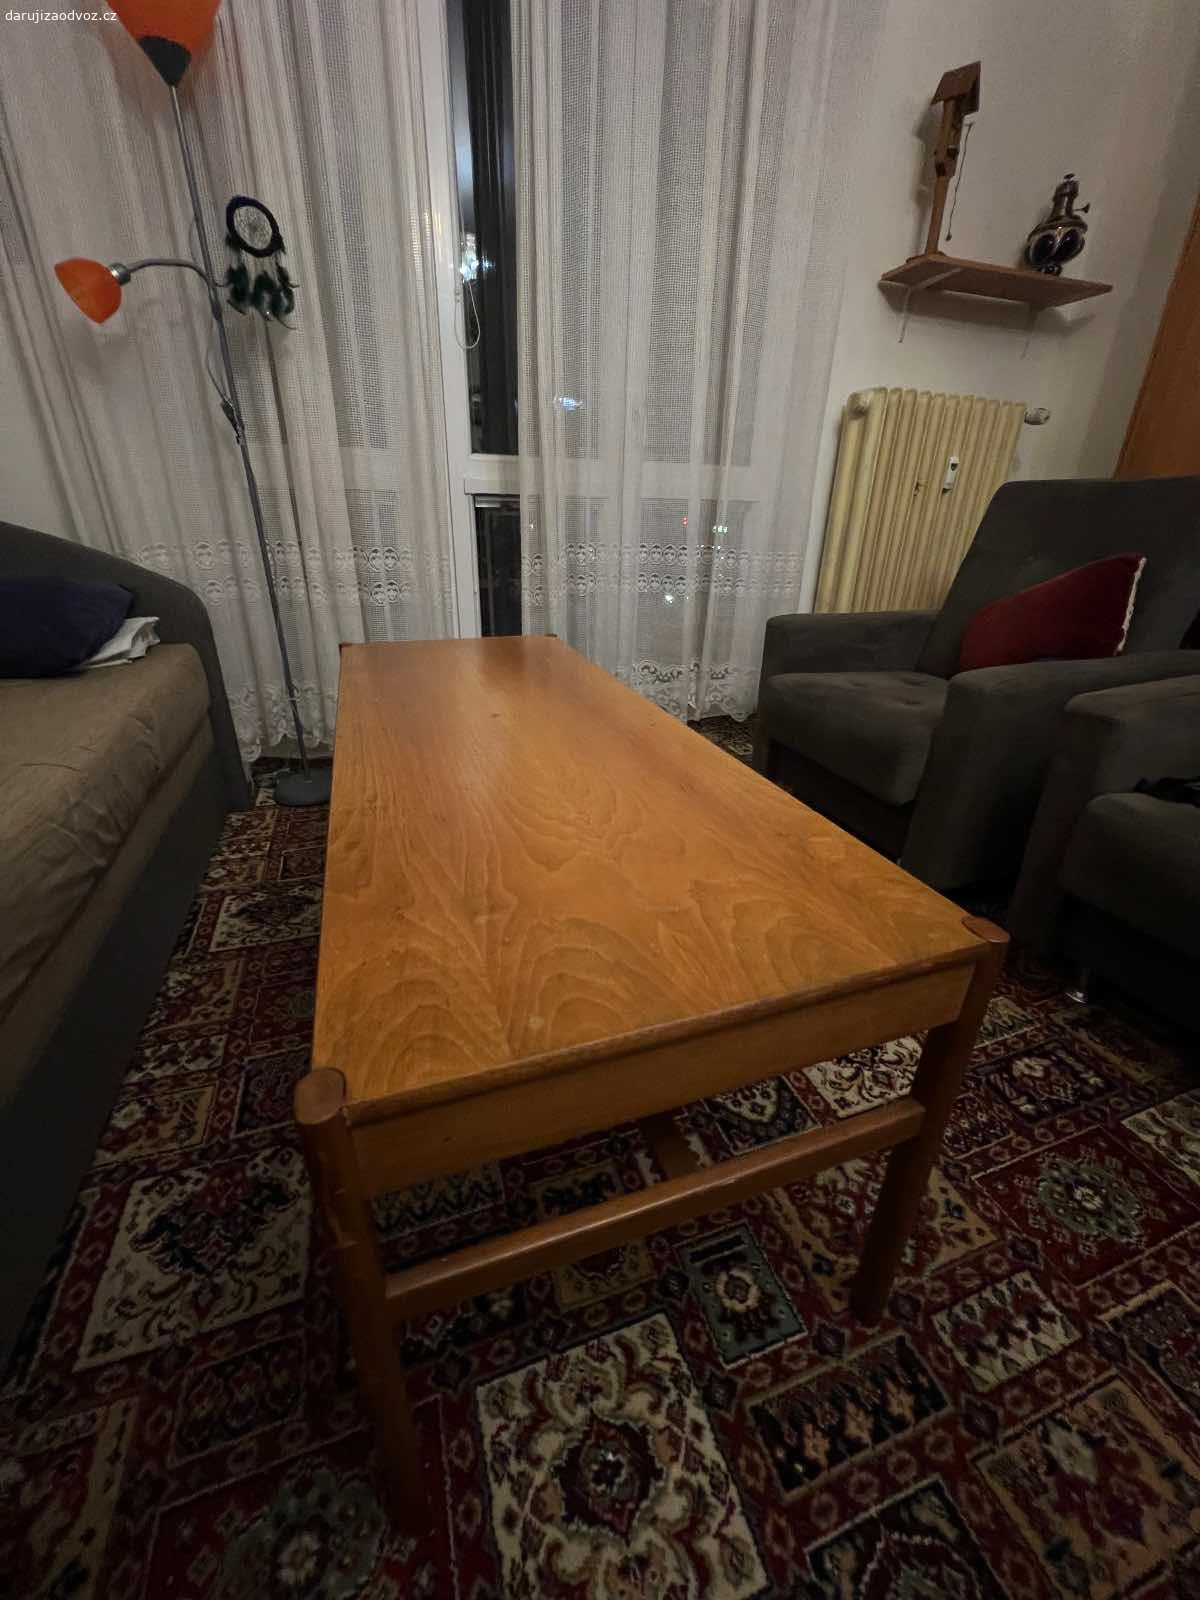 Dřevěný stůl. Vyměním dřevěný stůl za sklenici medu.

Starý a kvalitní dřevěný stůl. 
Ideální pro ubrus nebo super pro lehkou renovaci. 

Osobní vyzvednutí Palmovka, Praha 8